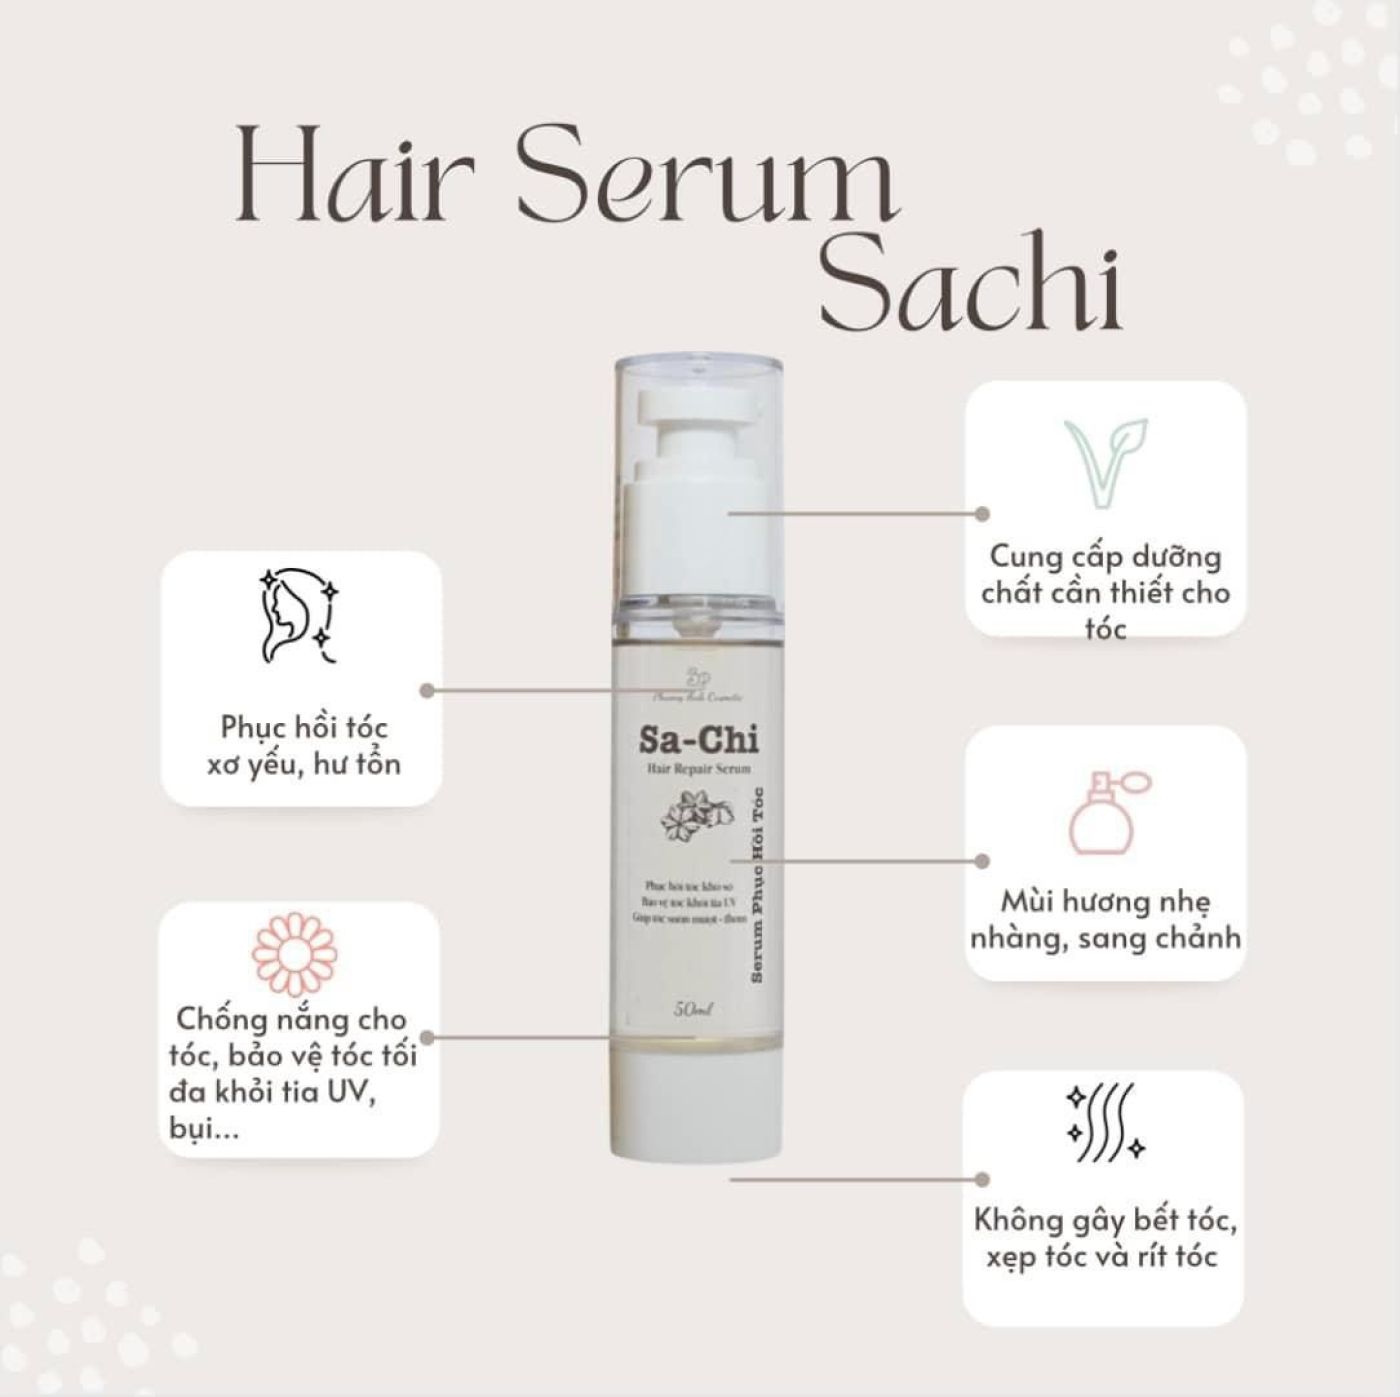 Serum Dưỡng Phục Hồi Tóc Chắc Khỏe Sachi Hair Repair Serum 50ml [Phương Anh Cosmetic]